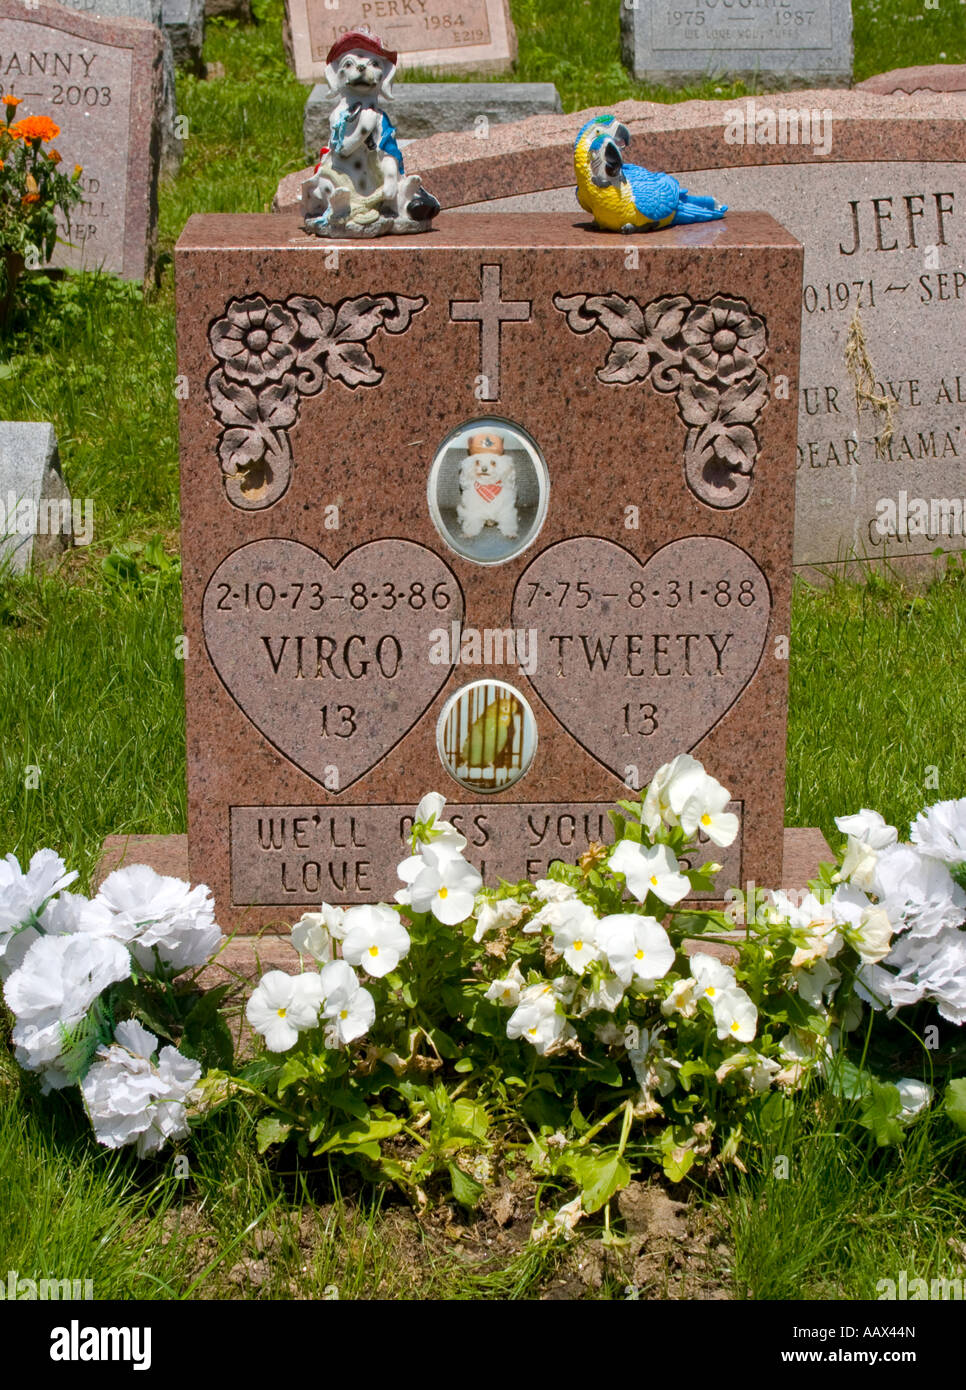 Pietra tombale per il bird Tweety e cane Virgo a Hartsdale cimitero di Pet in Hartsdale New York Foto Stock